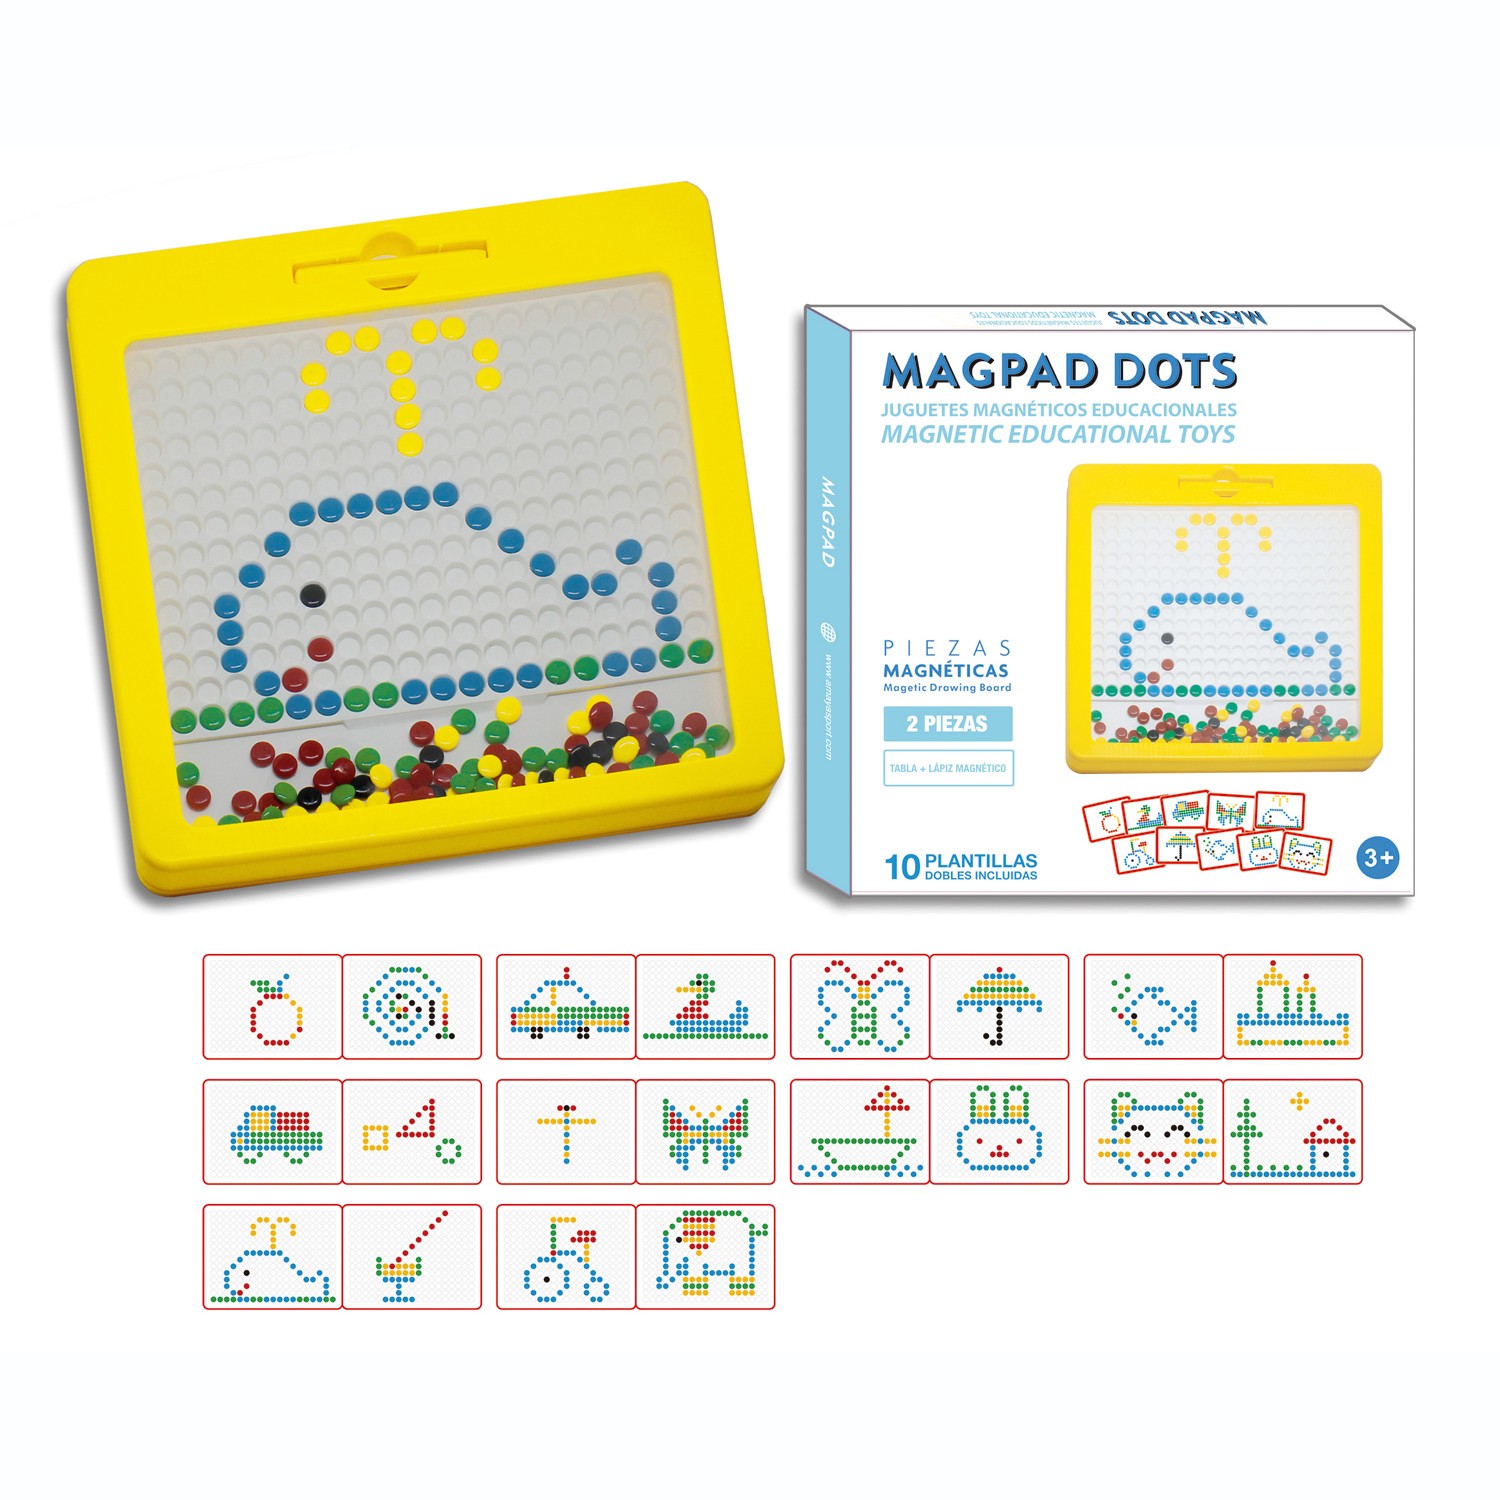 magpad-dots